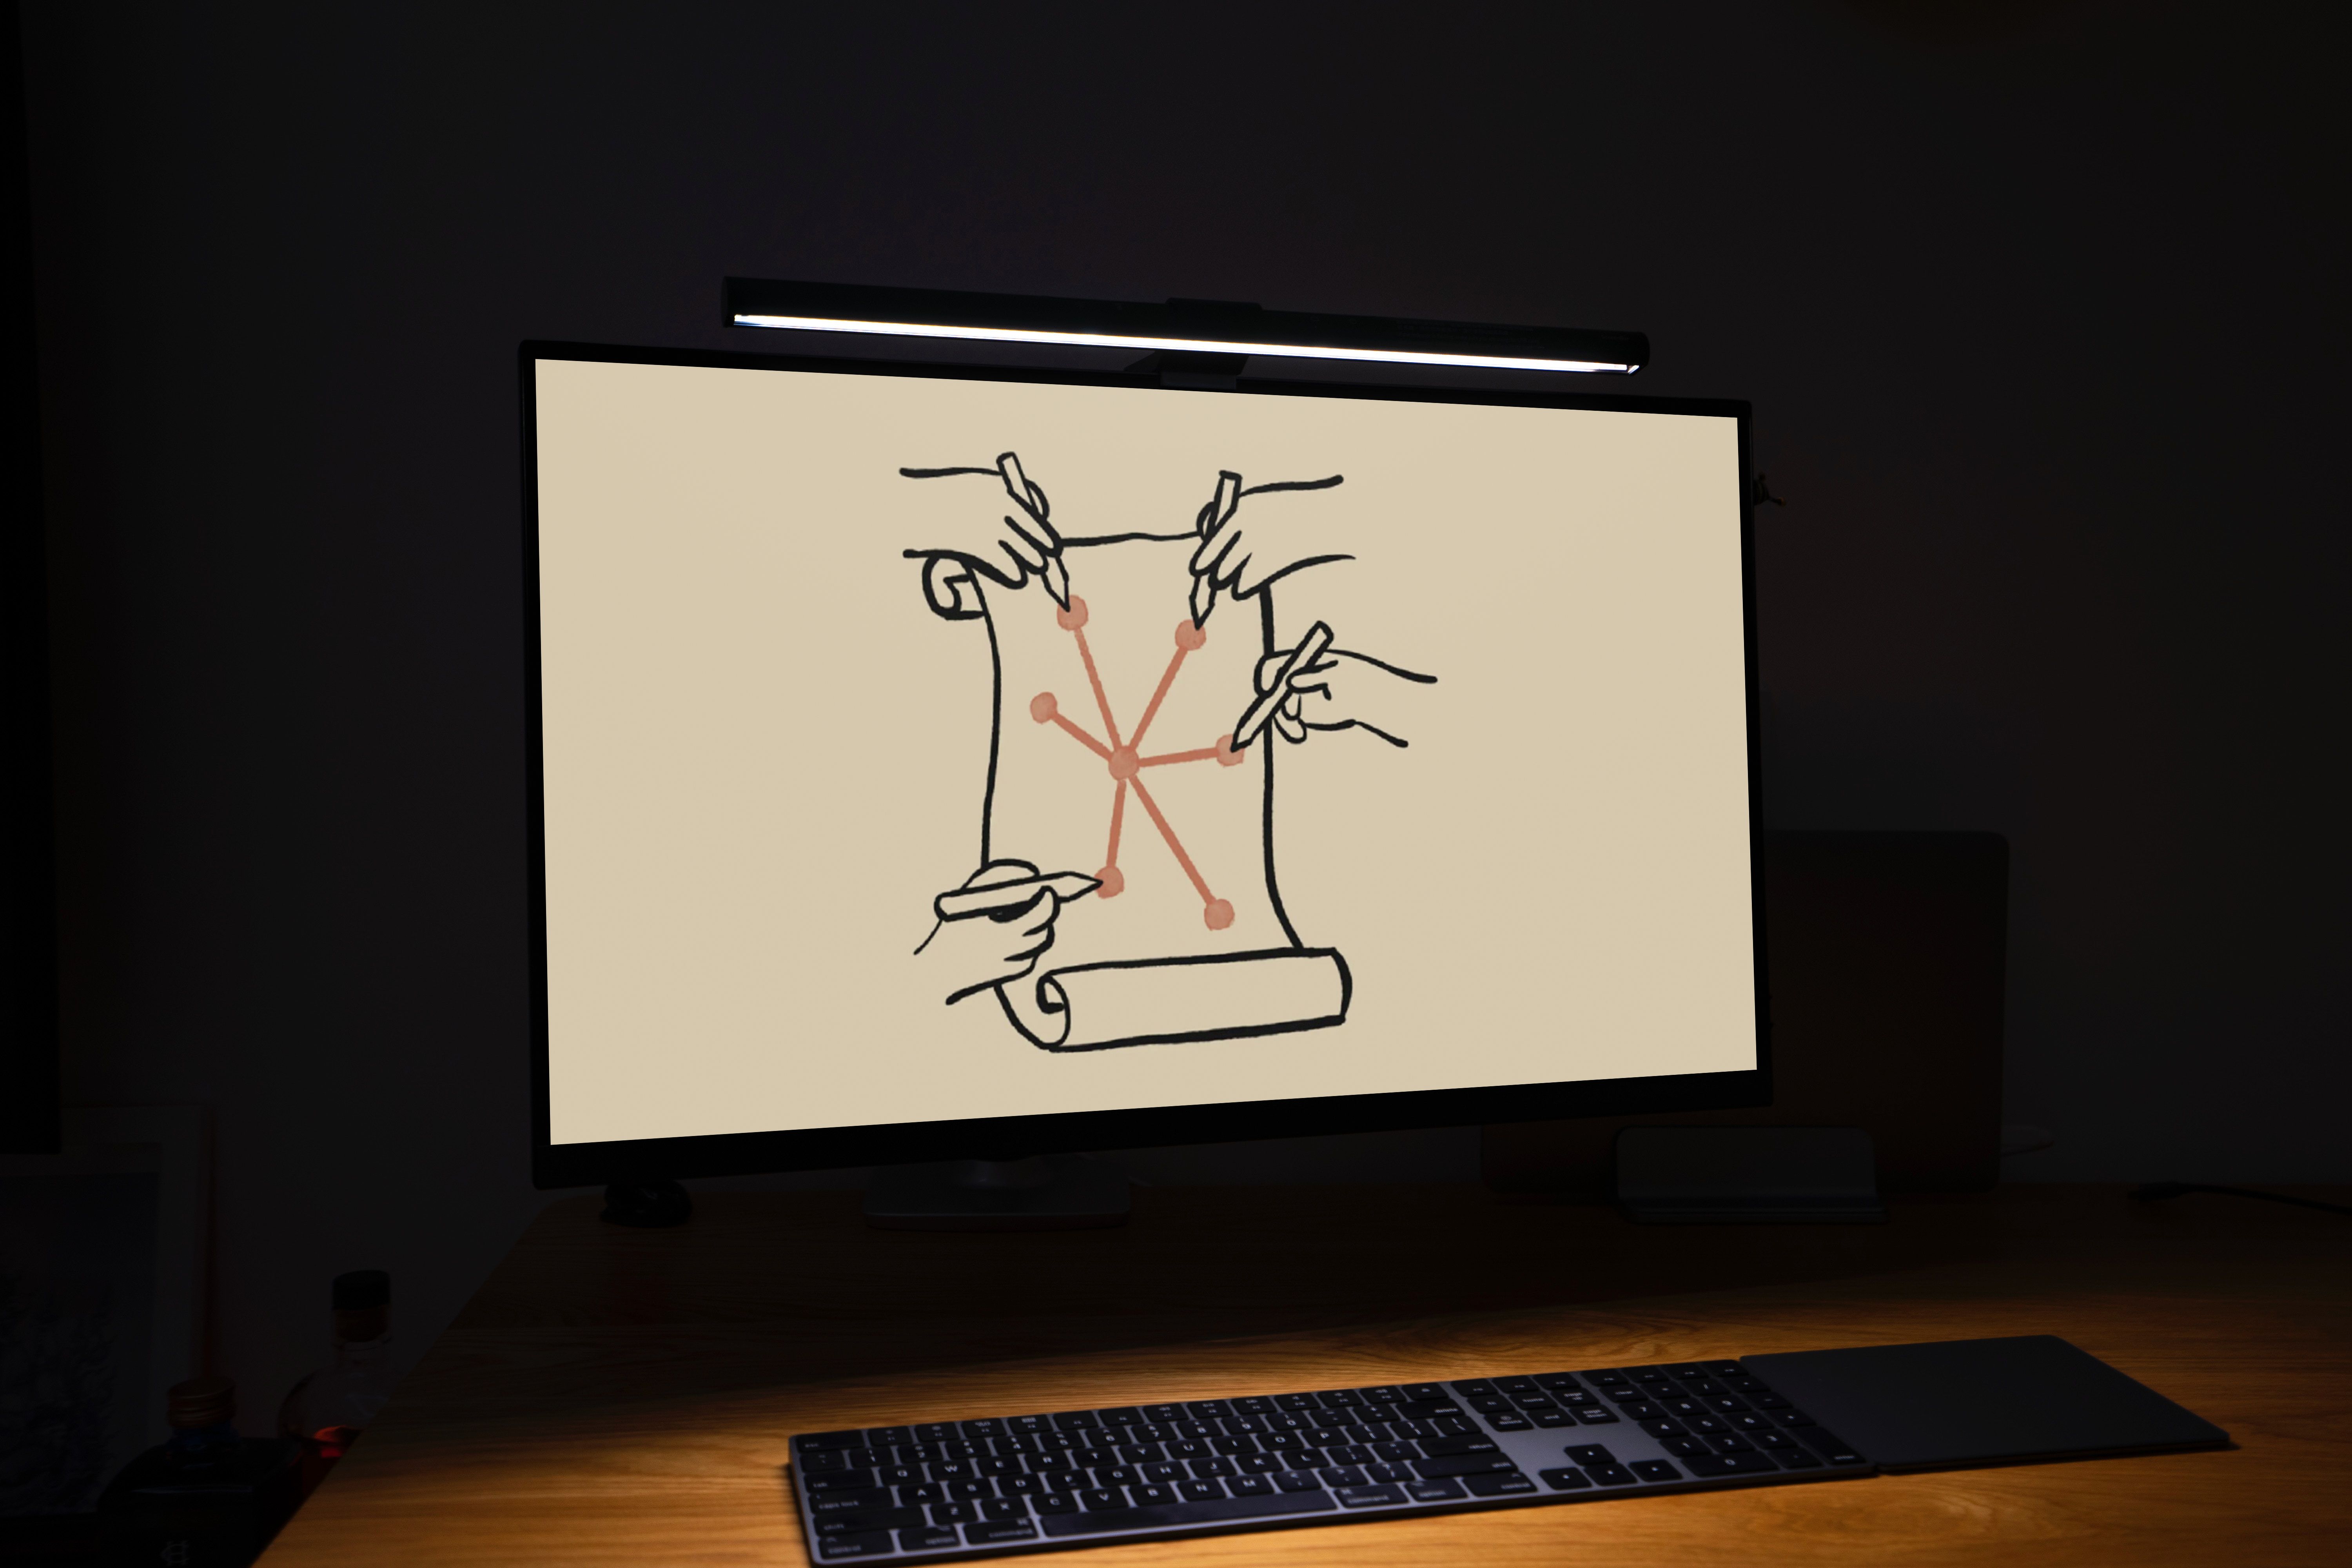 Um monitor em uma sala escura exibindo uma imagem desenhada à mão de quatro mãos em um pergaminho